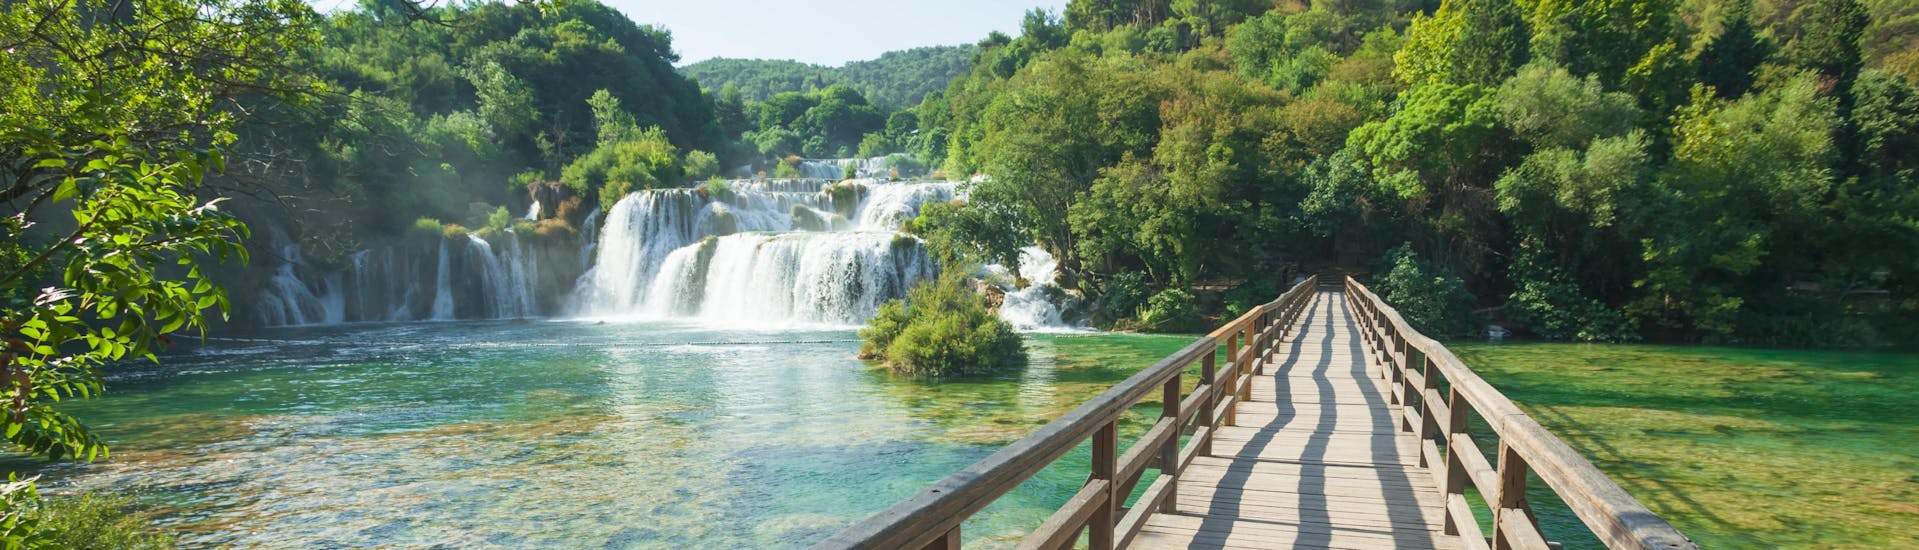 Photo des célèbres chutes d'eau du parc national de Krka en Croatie.